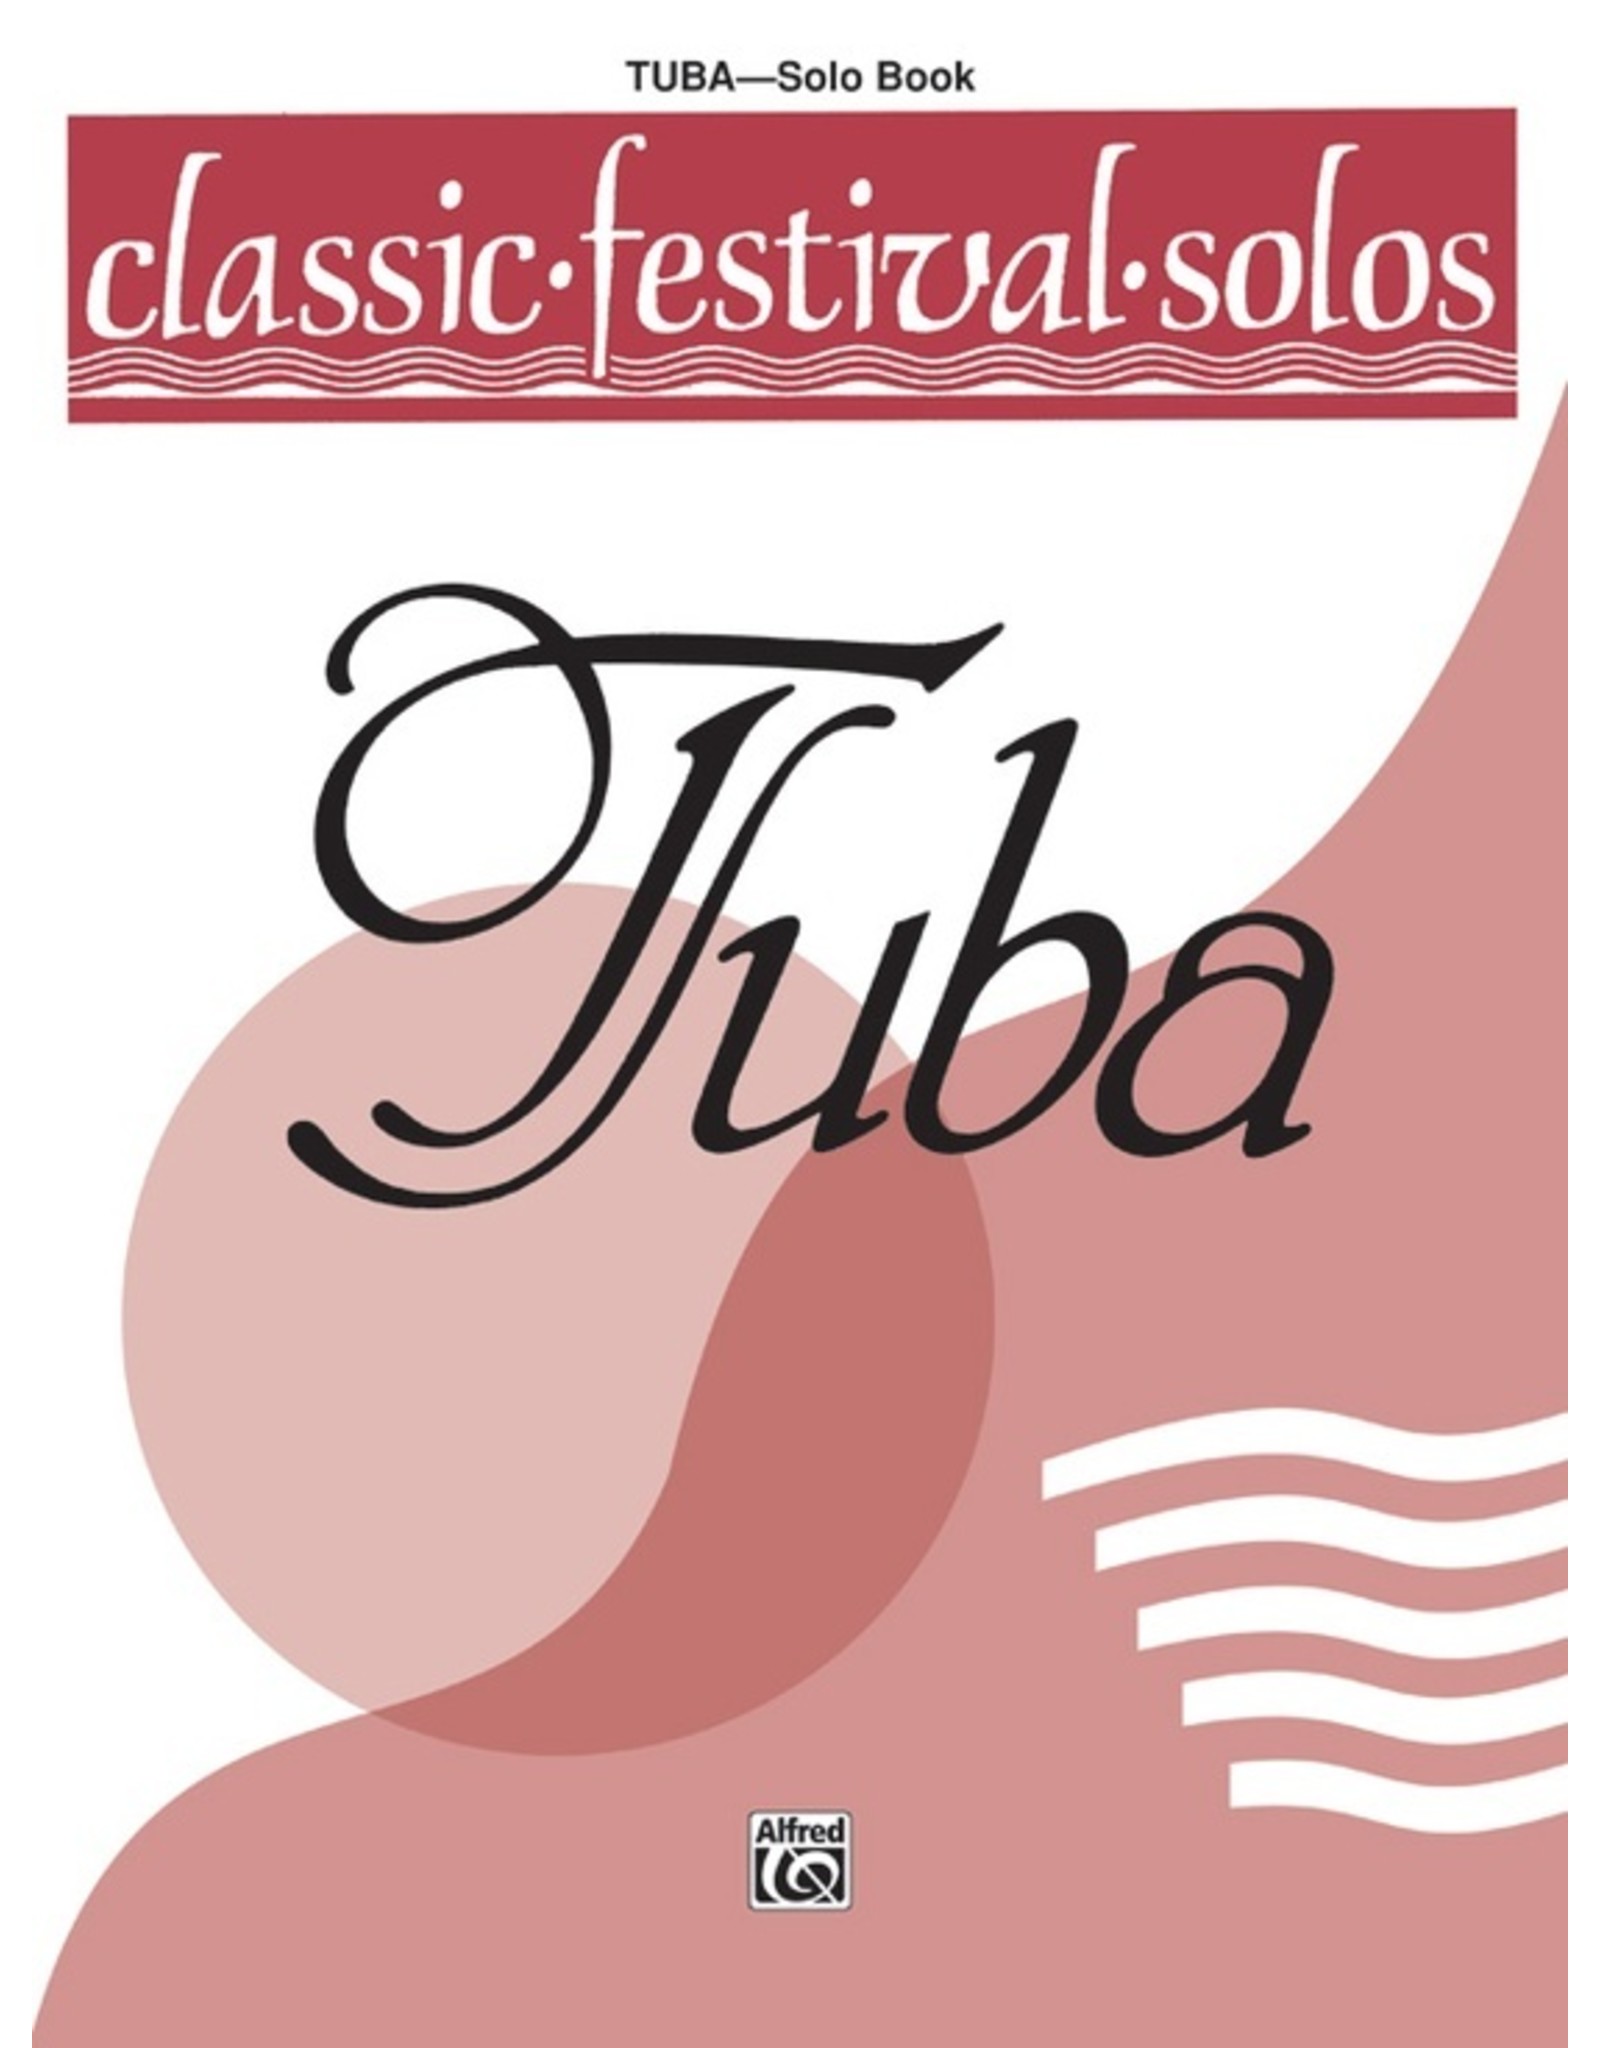 Alfred Classic Festival Solos (Tuba), Volume 1 Solo Book (No Accomp.)